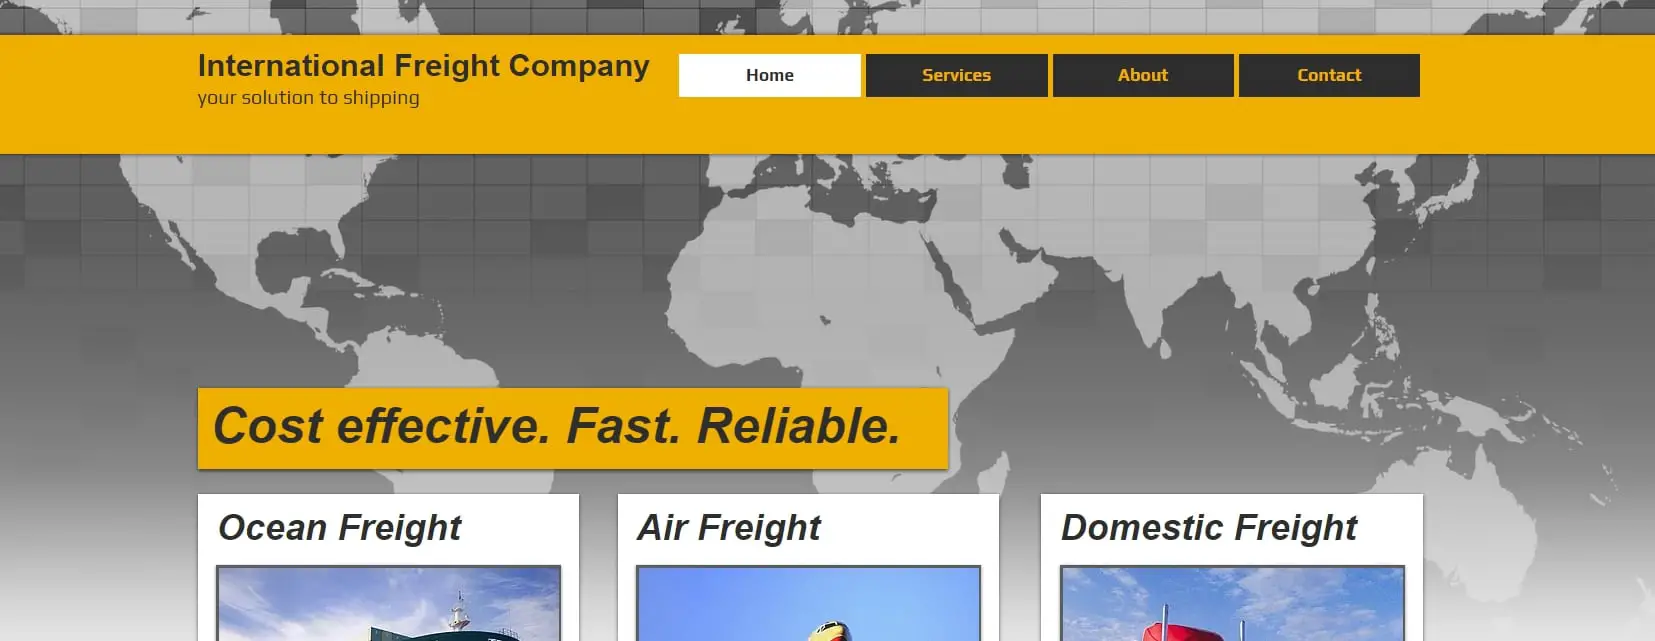 International Freight Website Template _ WIX